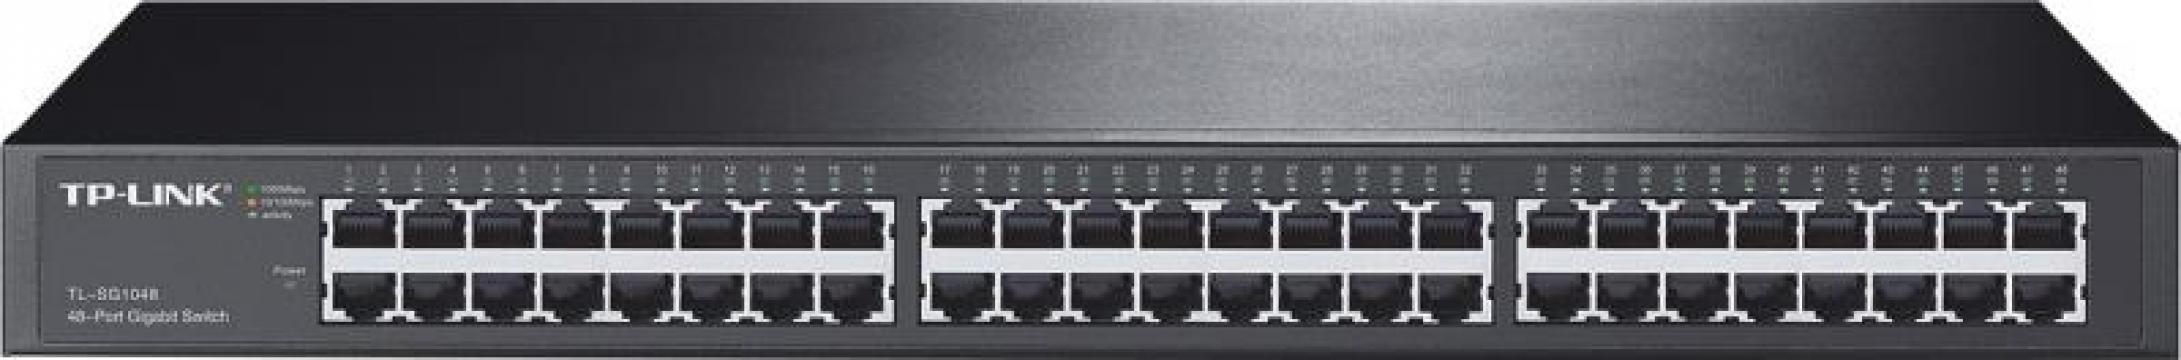 Switch TP-Link TL-SG1048, 48 porturi Gigabit, 96Gbps de la Etoc Online